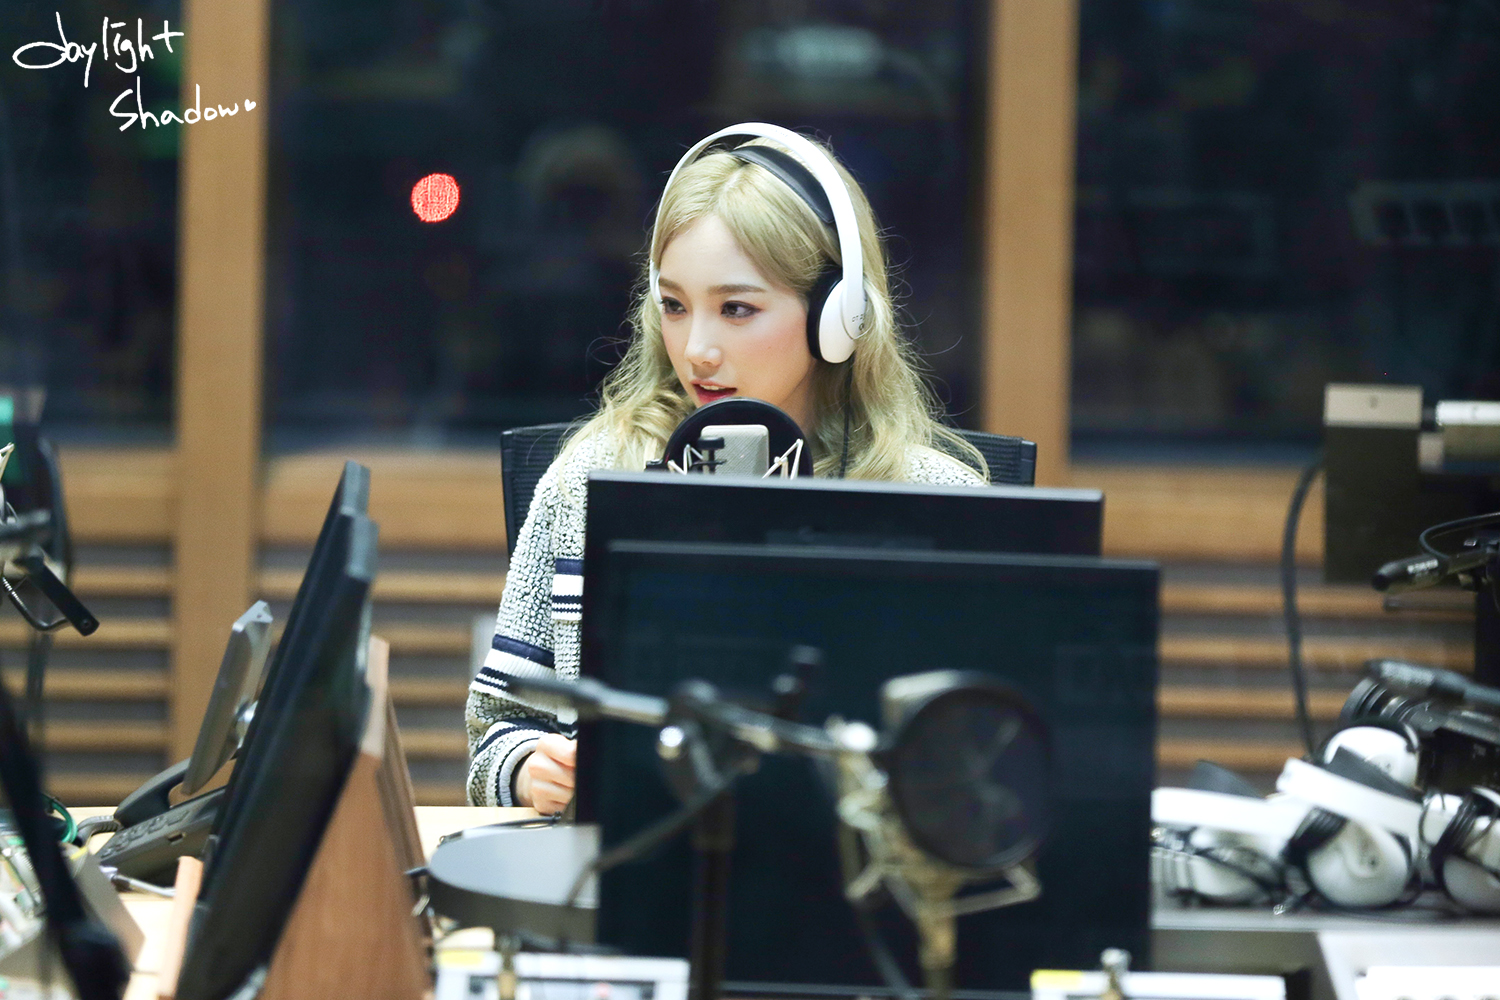 [OTHER][06-02-2015]Hình ảnh mới nhất từ DJ Sunny tại Radio MBC FM4U - "FM Date" - Page 32 254C403F56A0B2FC05B3E4